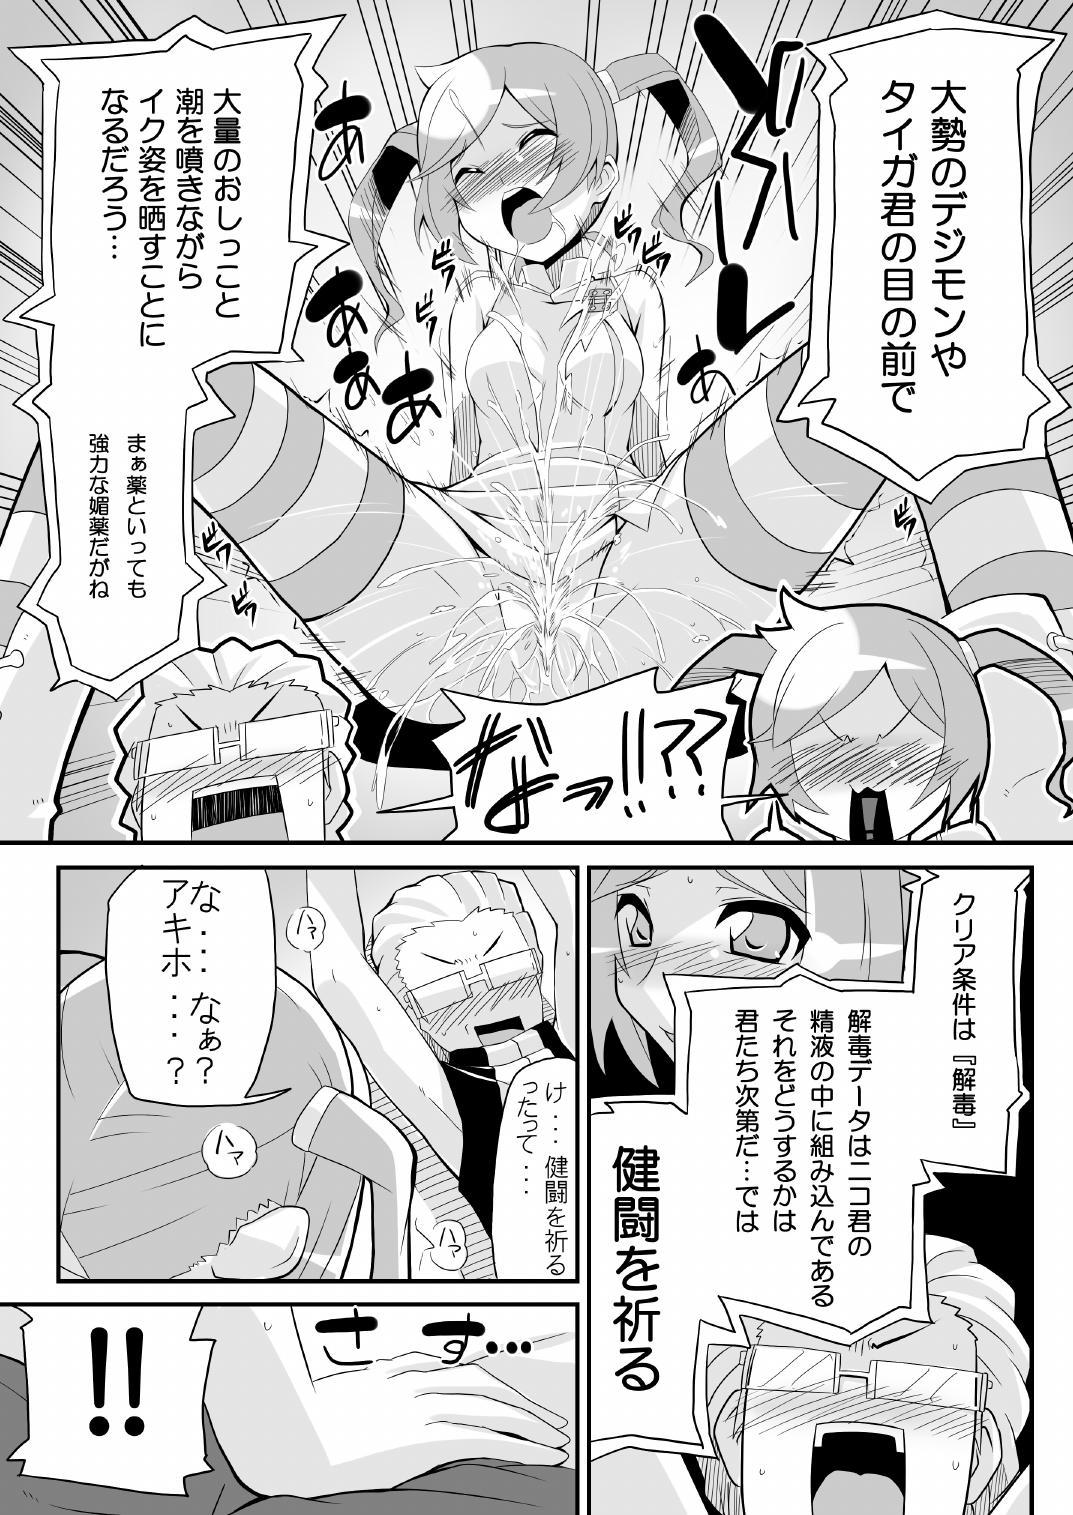 Italian Re:Akiho/Rinatize Ero - Digimon Sexy Girl - Page 5